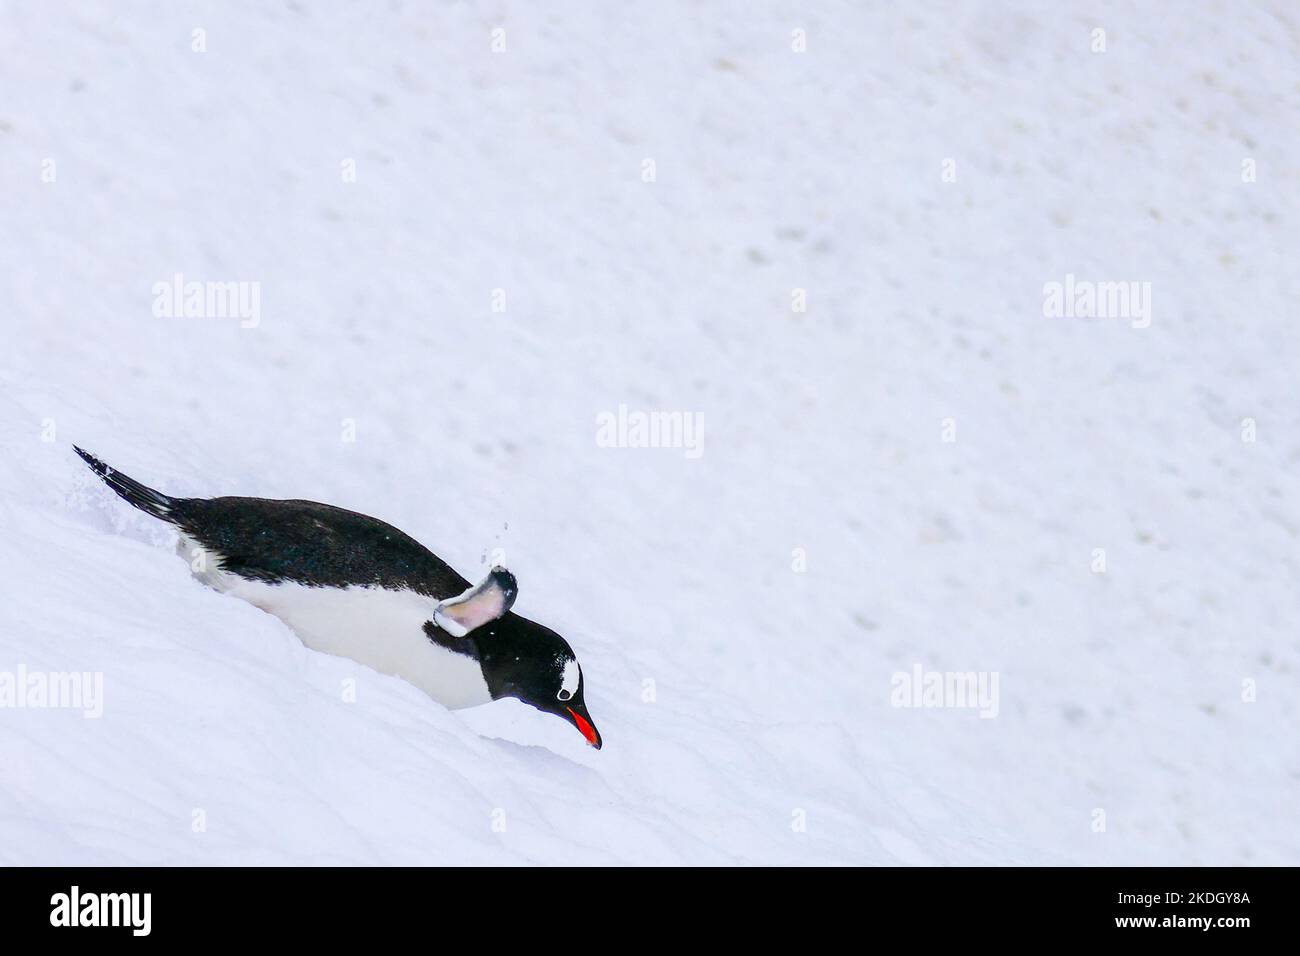 Un pingouin glissant sur une pente enneigée sur son ventre Banque D'Images